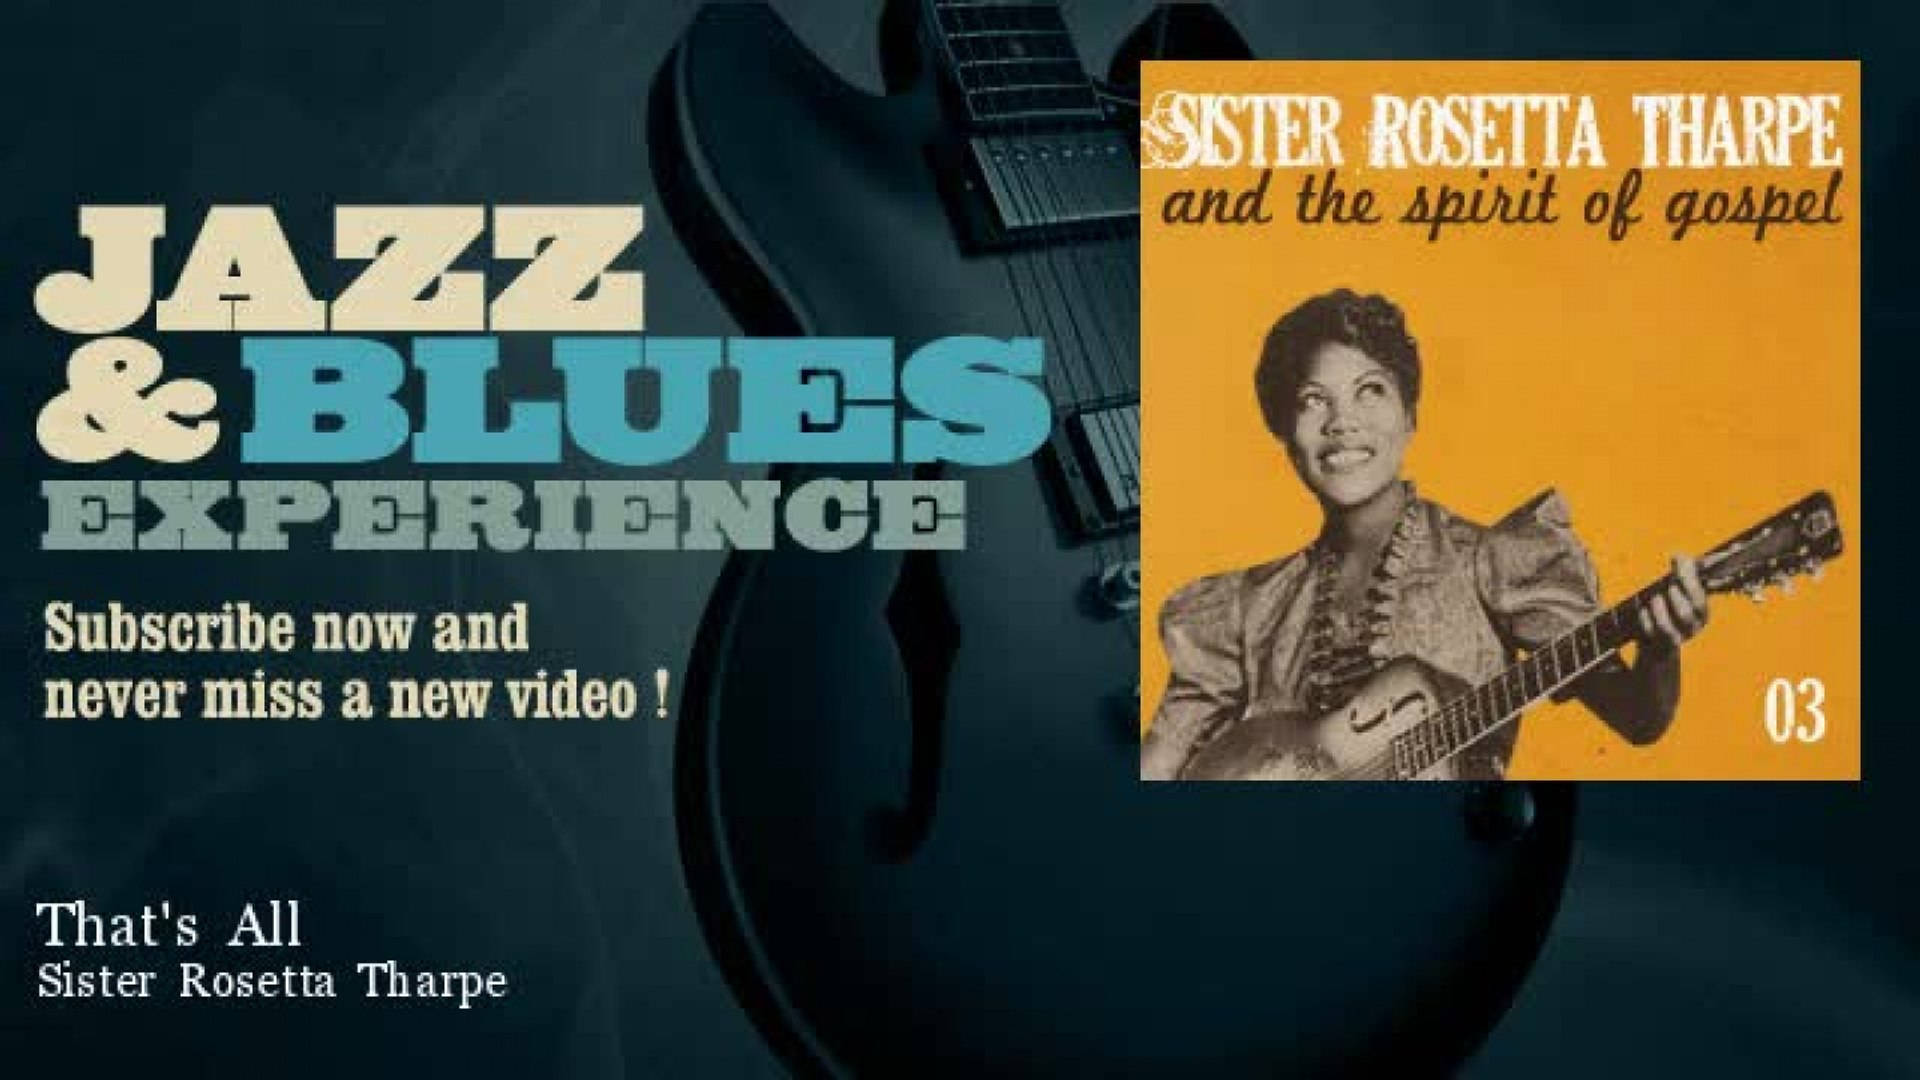 Søster Rosetta Tharpe Jazz & Blues oplevelse Poster Art Tapete Wallpaper